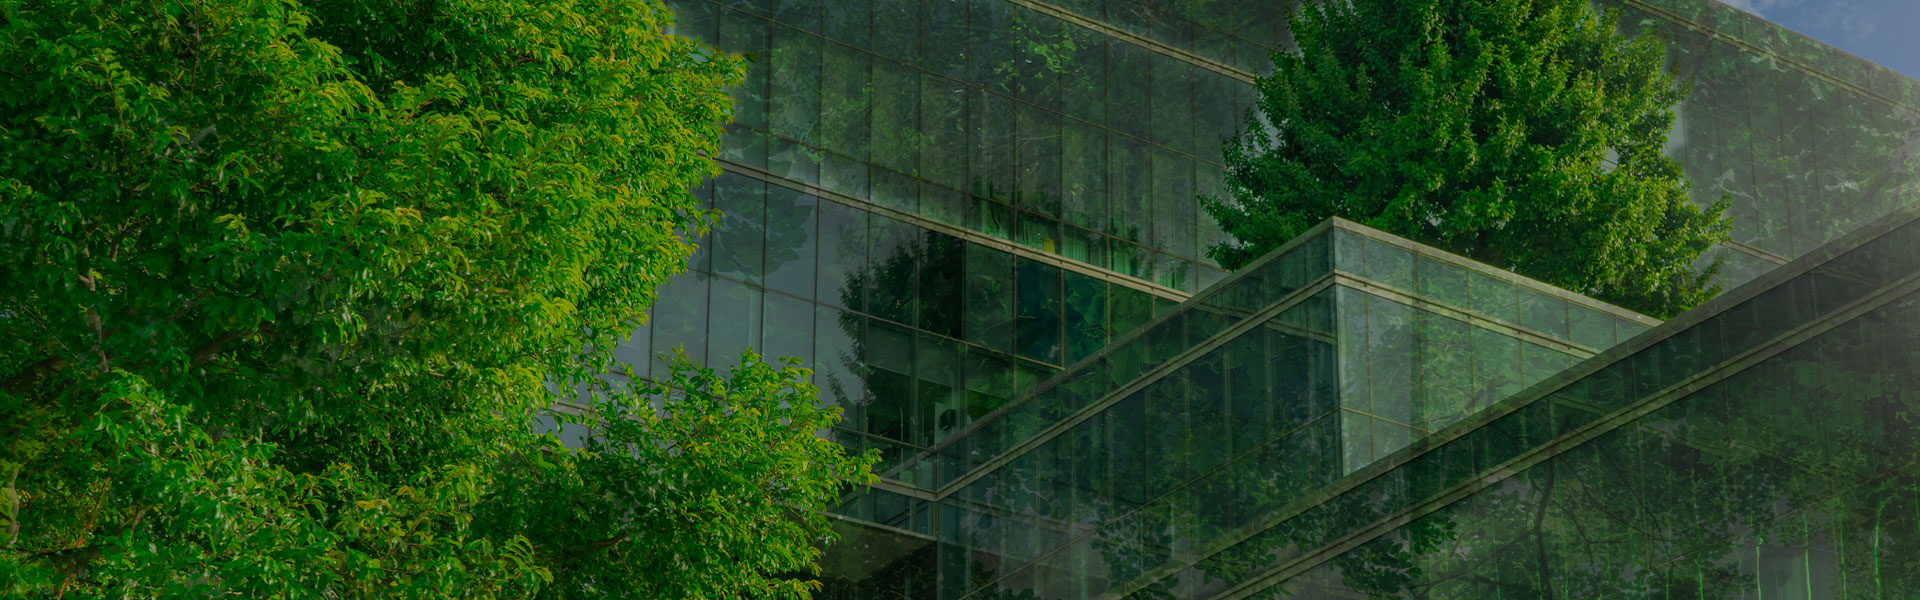 Glasgebäude mit Bepflanzung